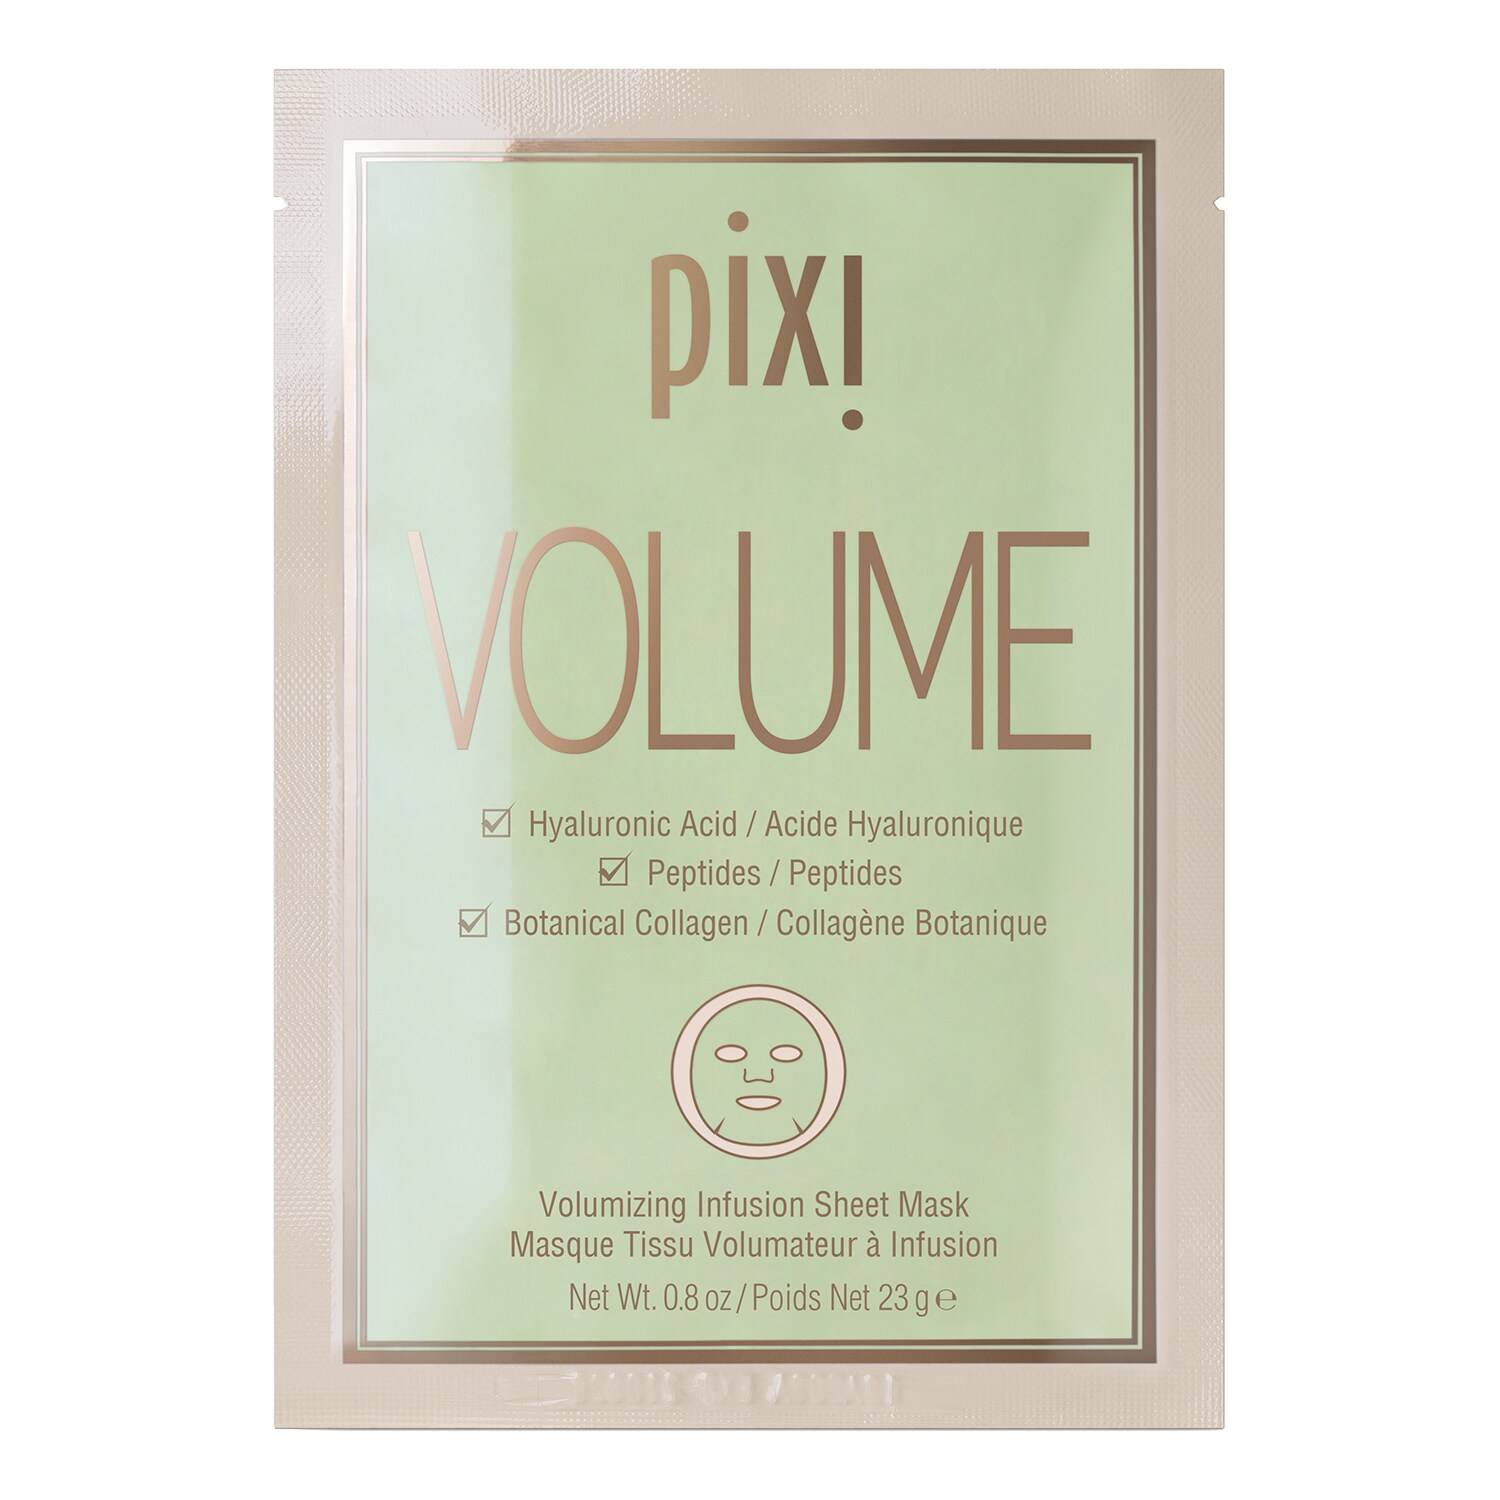 Pixi VOLUME Sheet Mask x 3